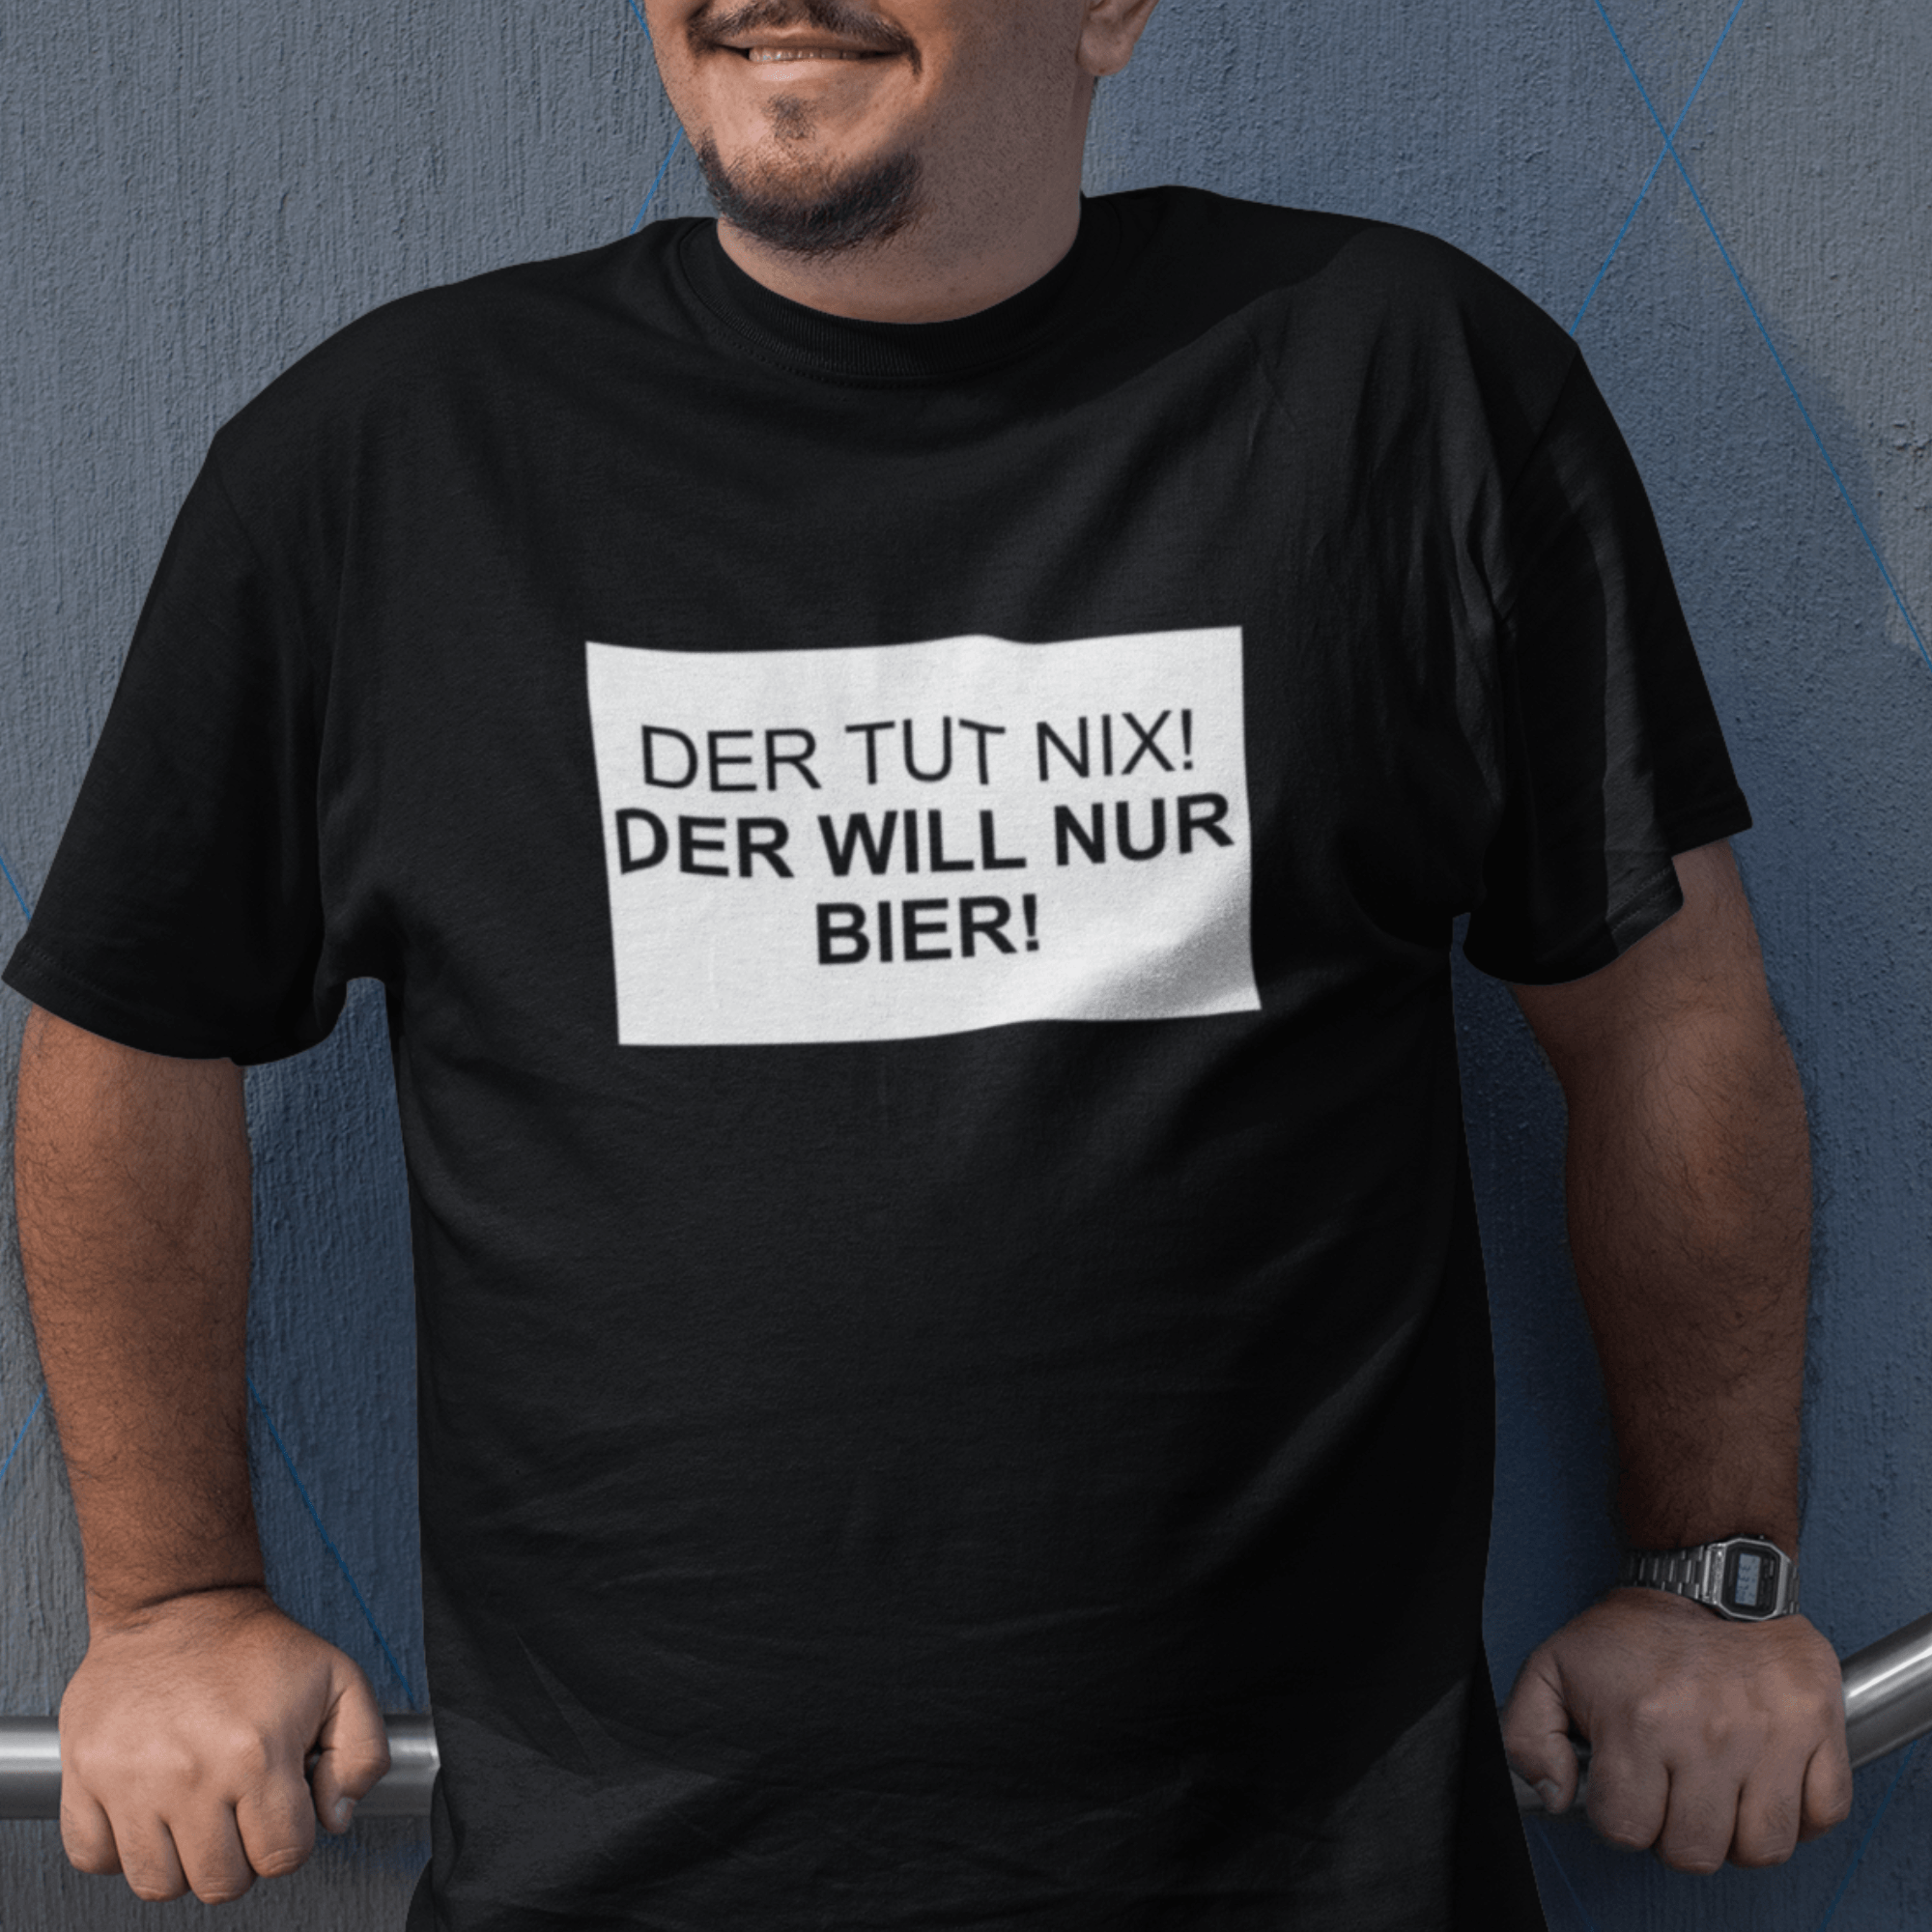 DER TUT NIX! BIER - Herren Shirt - einschenken24.de